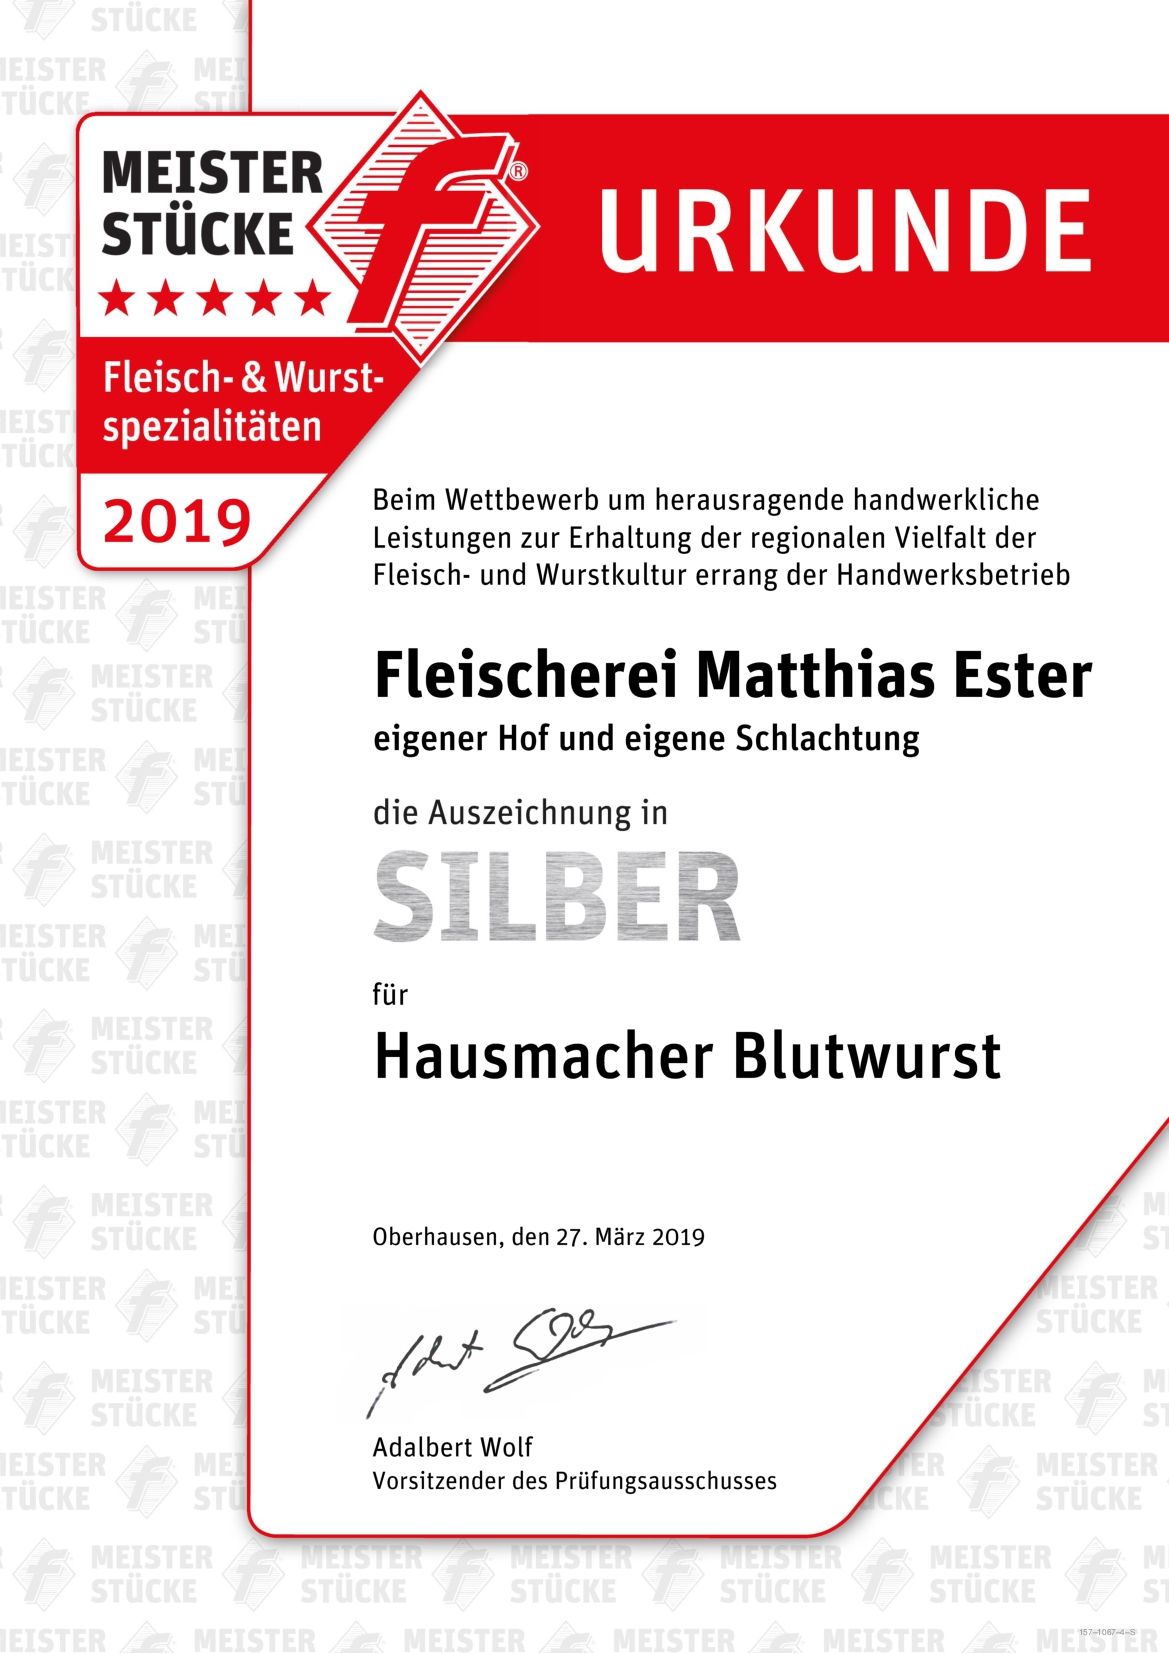 Auszeichnungen Urkunde Meisterstücke 2019 Fleischerei Ester